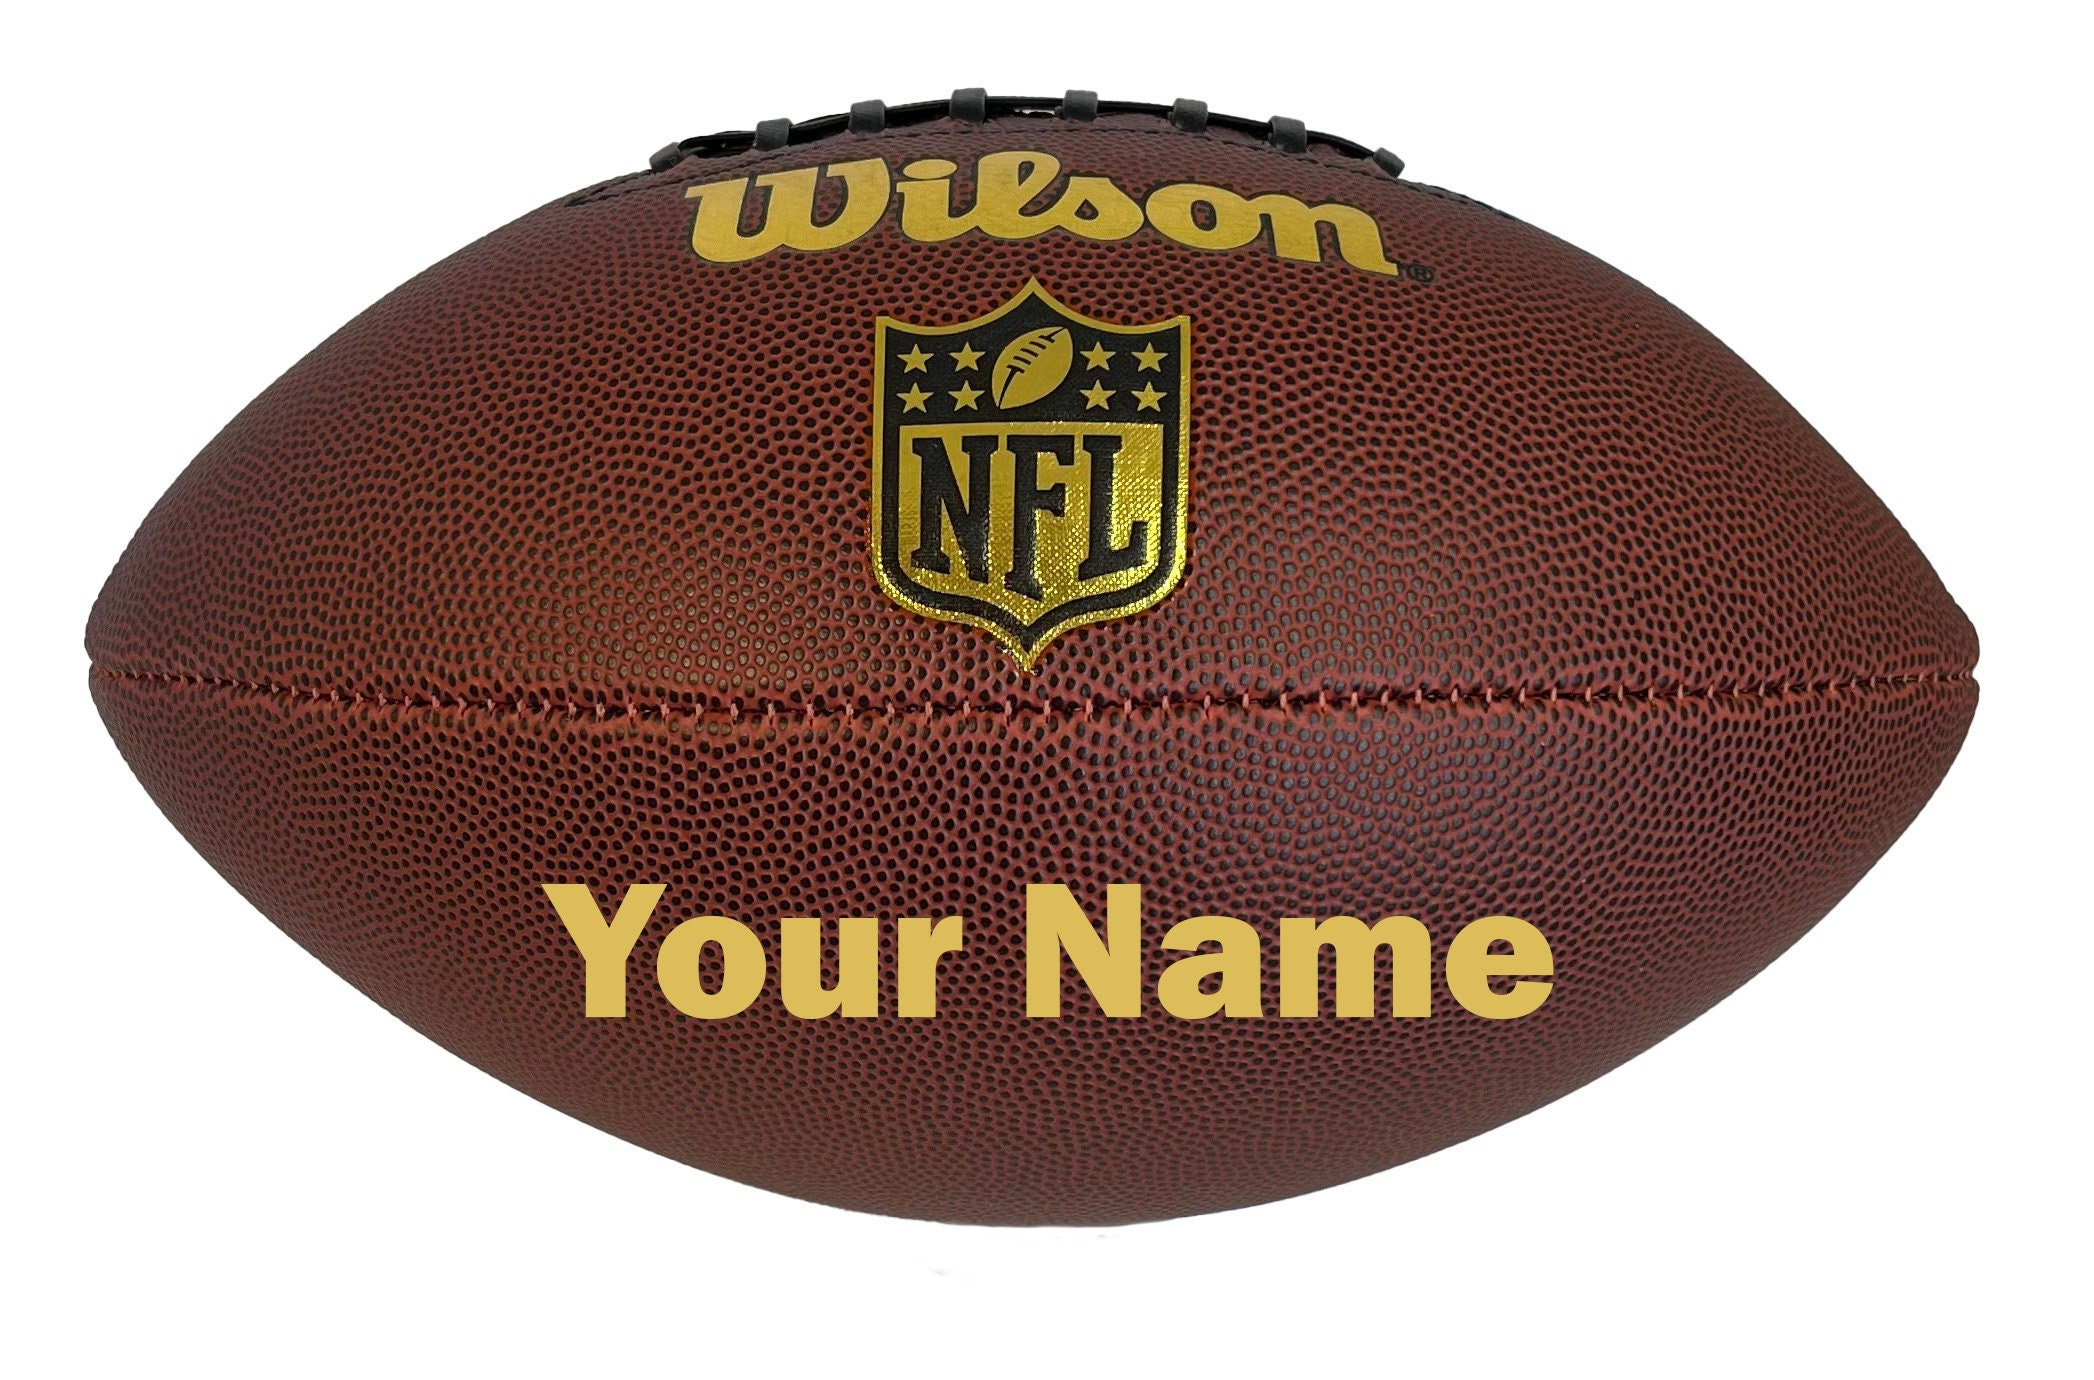 Balón de fútbol americano Adulto - GST COMPOSITE OFFICIAL marrón